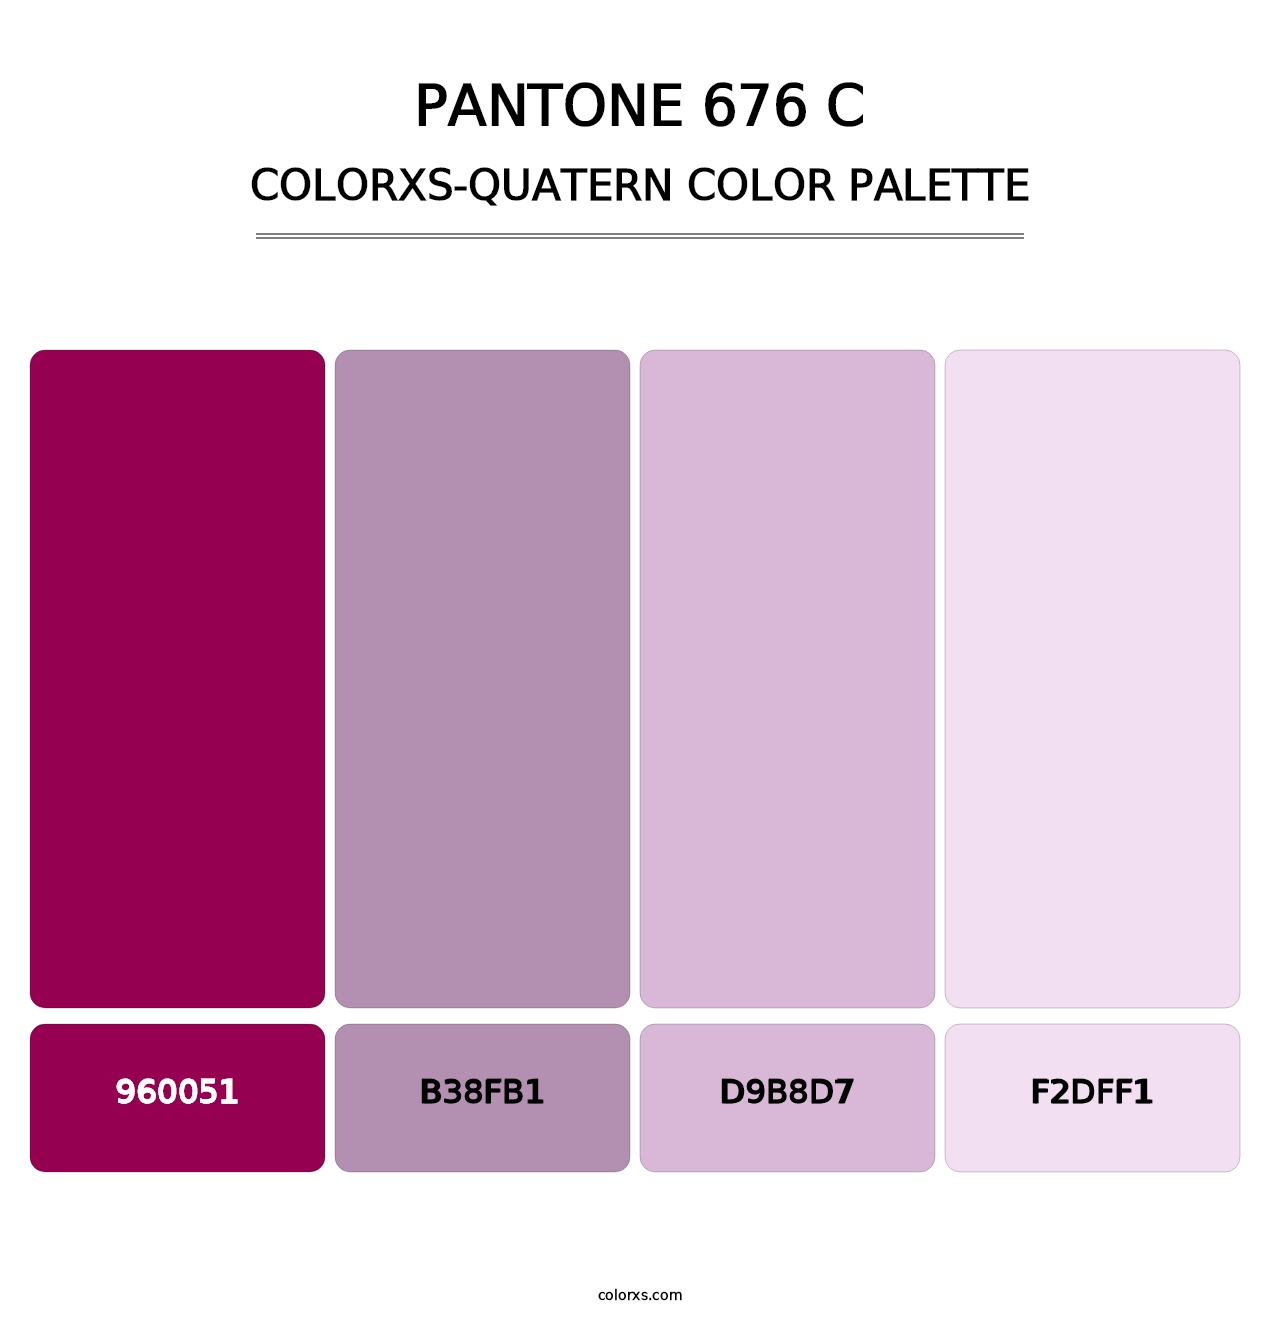 PANTONE 676 C - Colorxs Quatern Palette